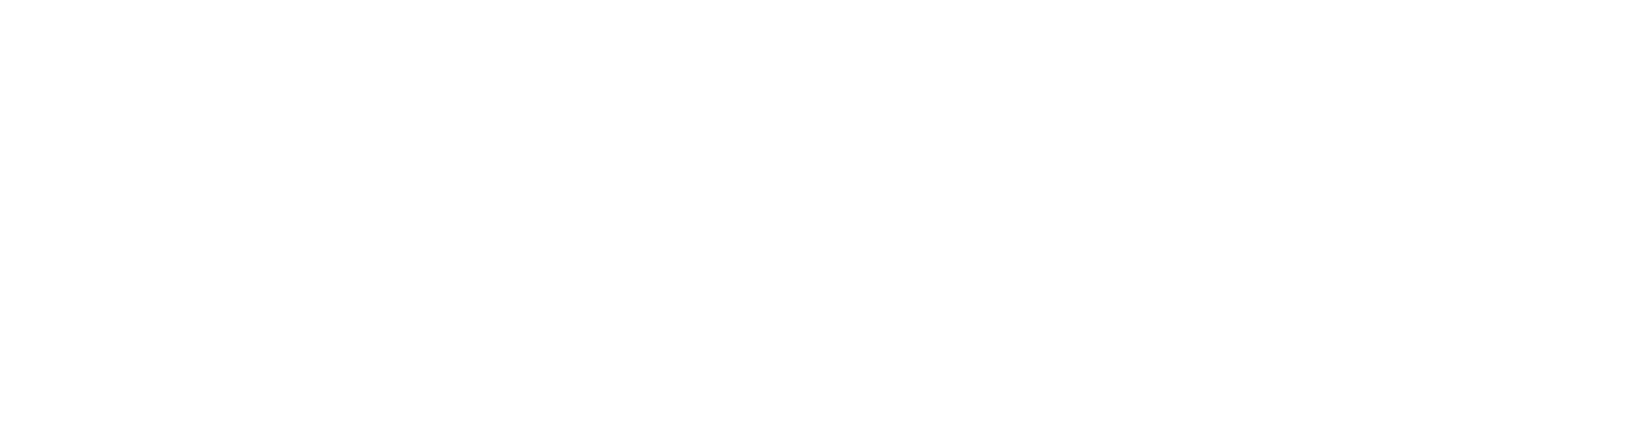 MSCI logo large for dark backgrounds (transparent PNG)